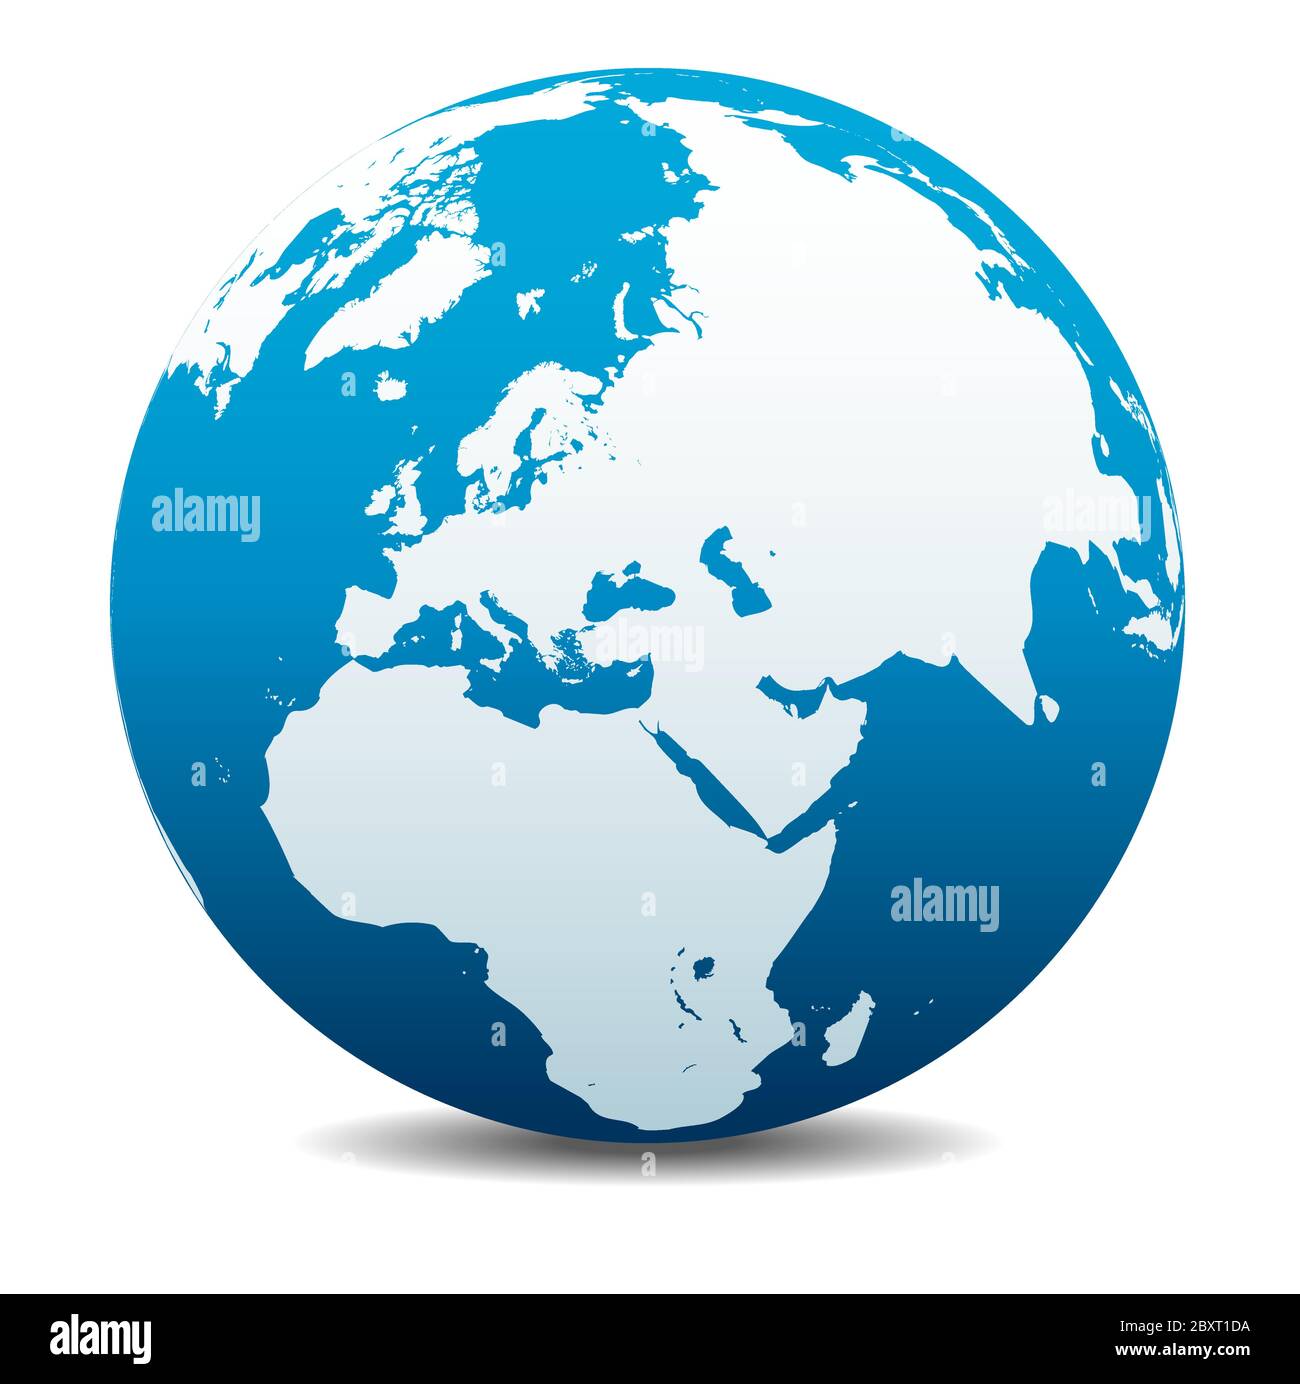 Moyen-Orient, Russie, Europe et Afrique. Icône carte vectorielle du globe terrestre, Terre. Tous les éléments se trouvent sur des calques individuels dans le fichier vectoriel. Illustration de Vecteur